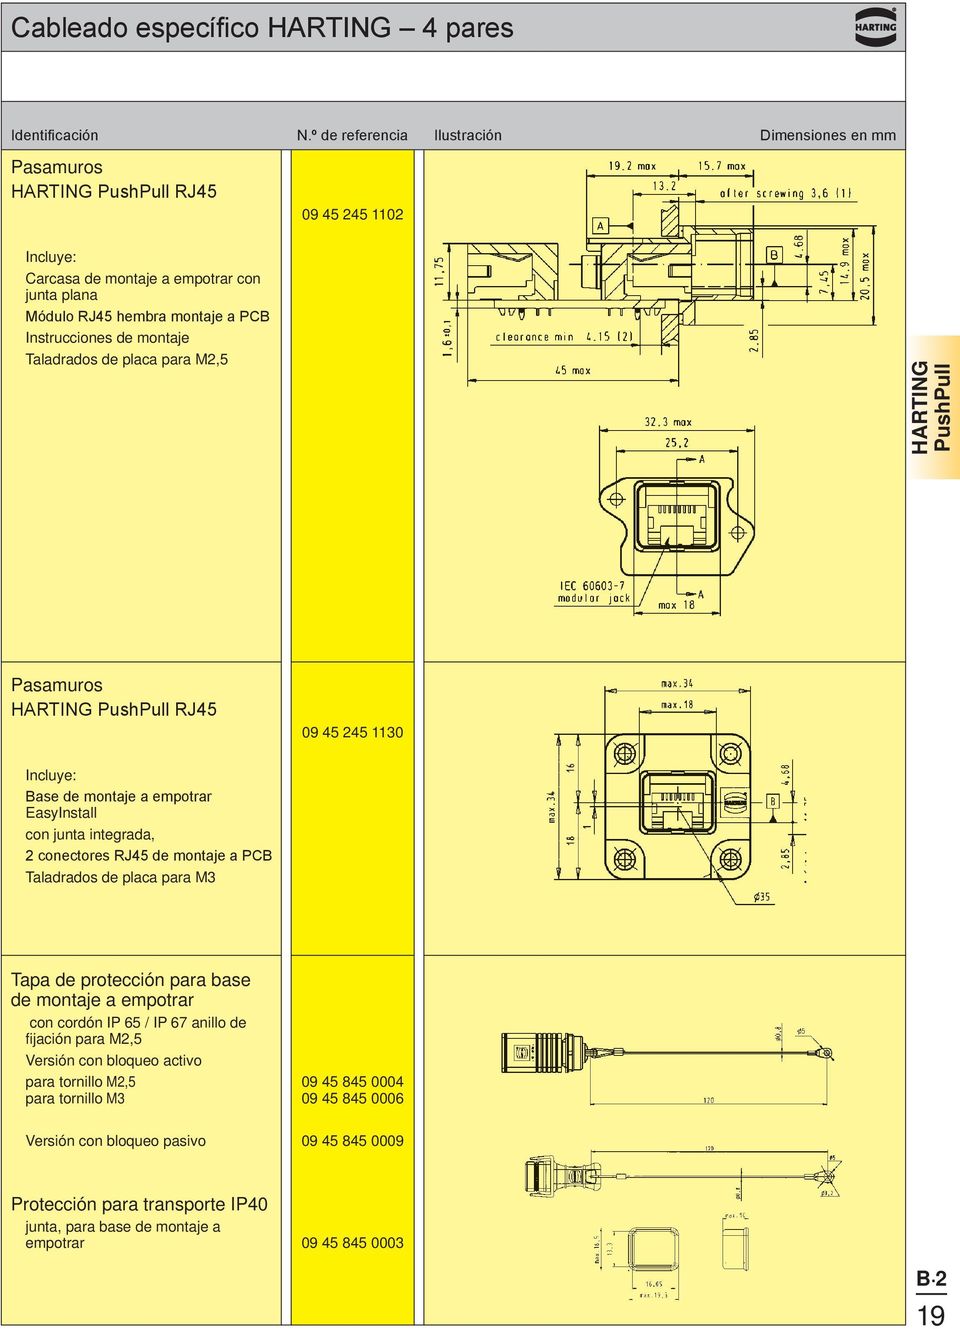 Instrucciones de montaje Taladrados de placa para M2,5 HARTING PushPull Pasamuros HARTING PushPull RJ45 09 45 245 1130 Incluye: Base de montaje a empotrar EasyInstall con junta integrada, 2